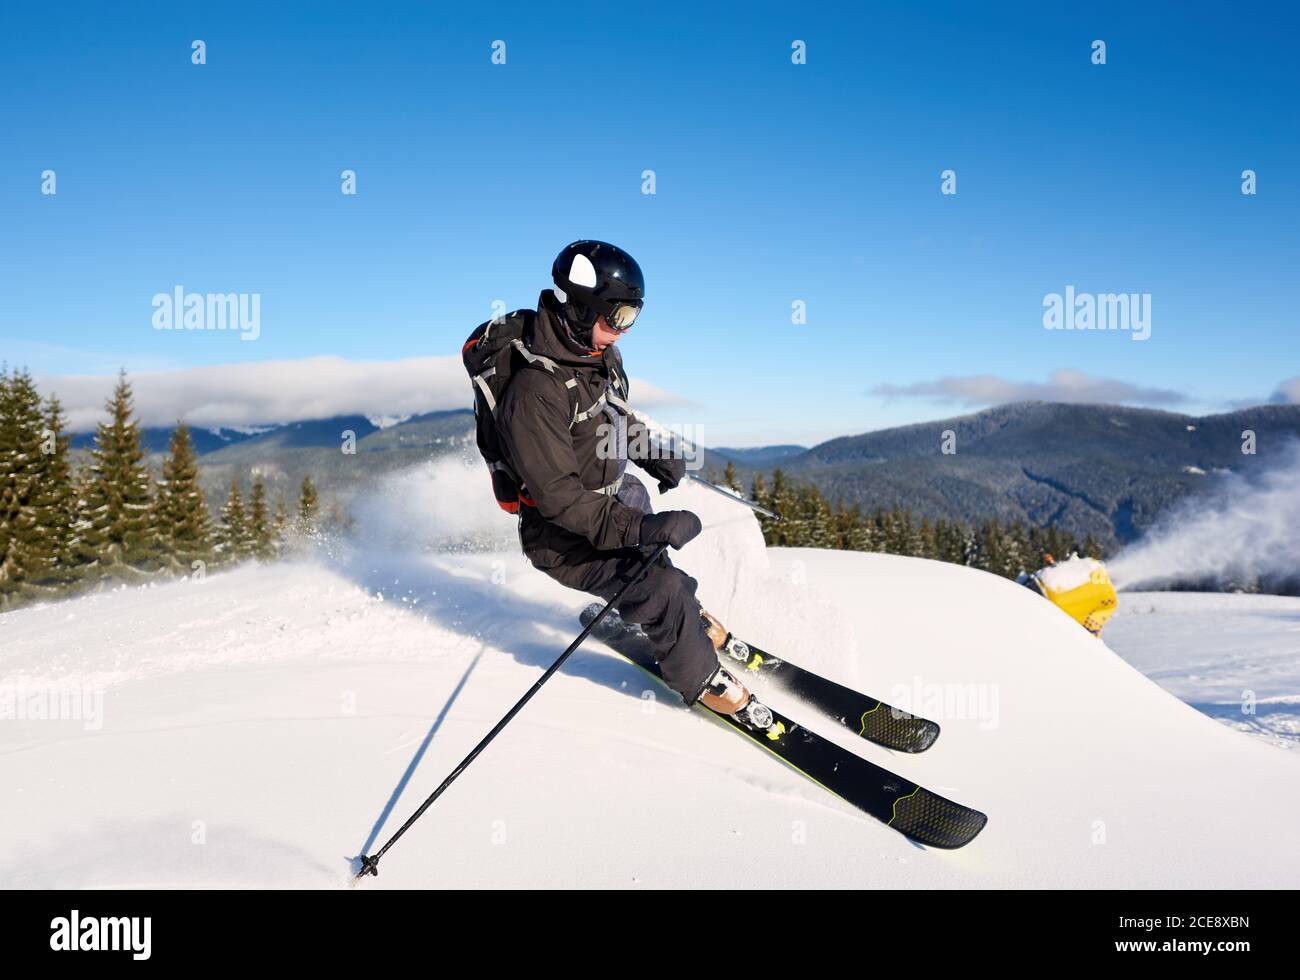 Konzentriertes Mann-Skifahrer-Training auf künstlichem Tiefhang mit frischem Neuschnee an sonnigen Tagen. Elektrische Schneekanone Maschine in Aktion auf Hintergrund. Blauer Himmel und malerische bewaldete Berge im Hintergrund Stockfoto